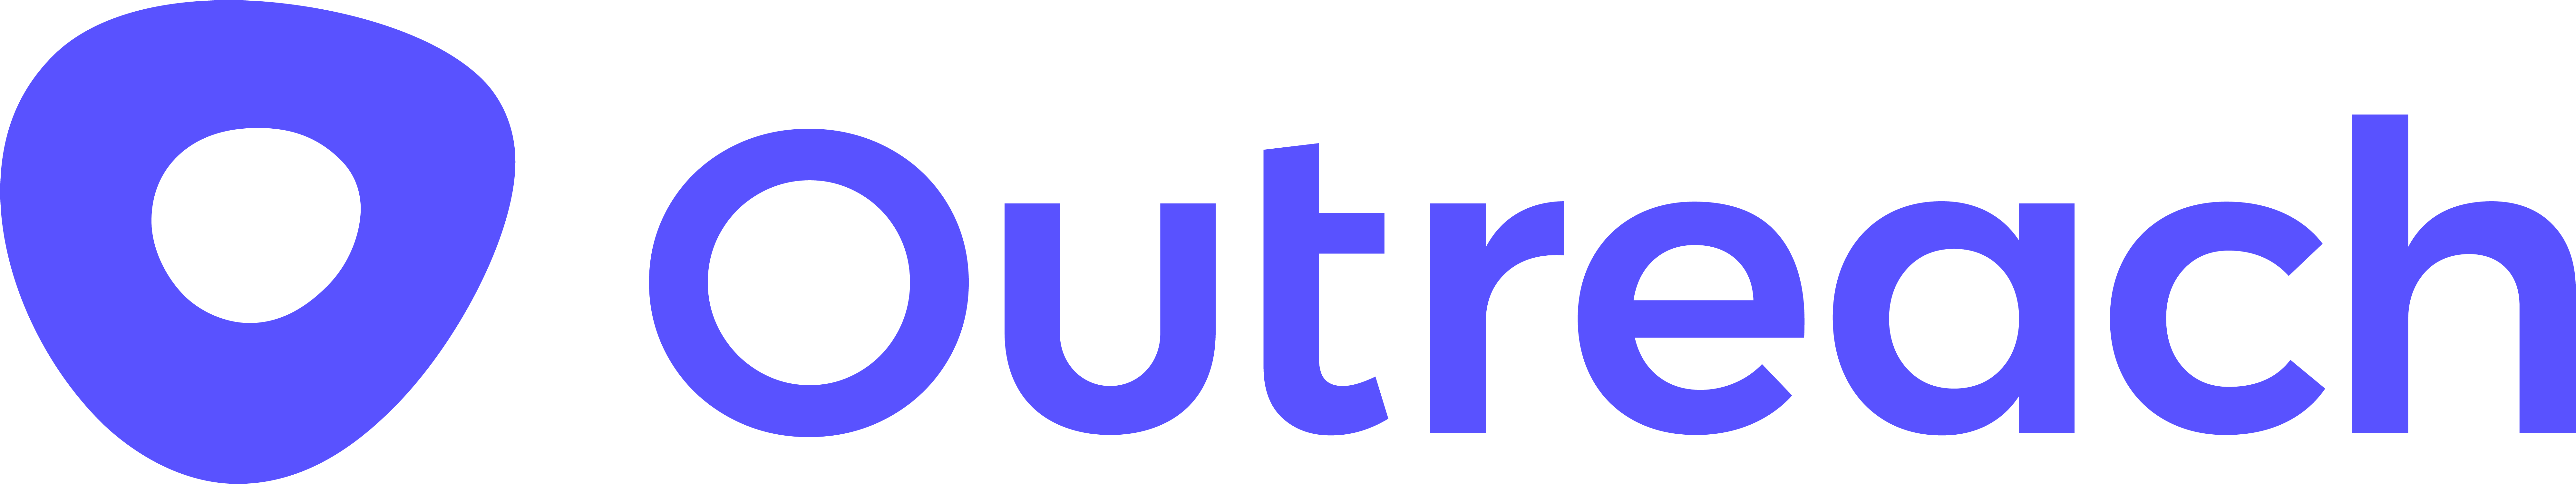 Outreach company logo